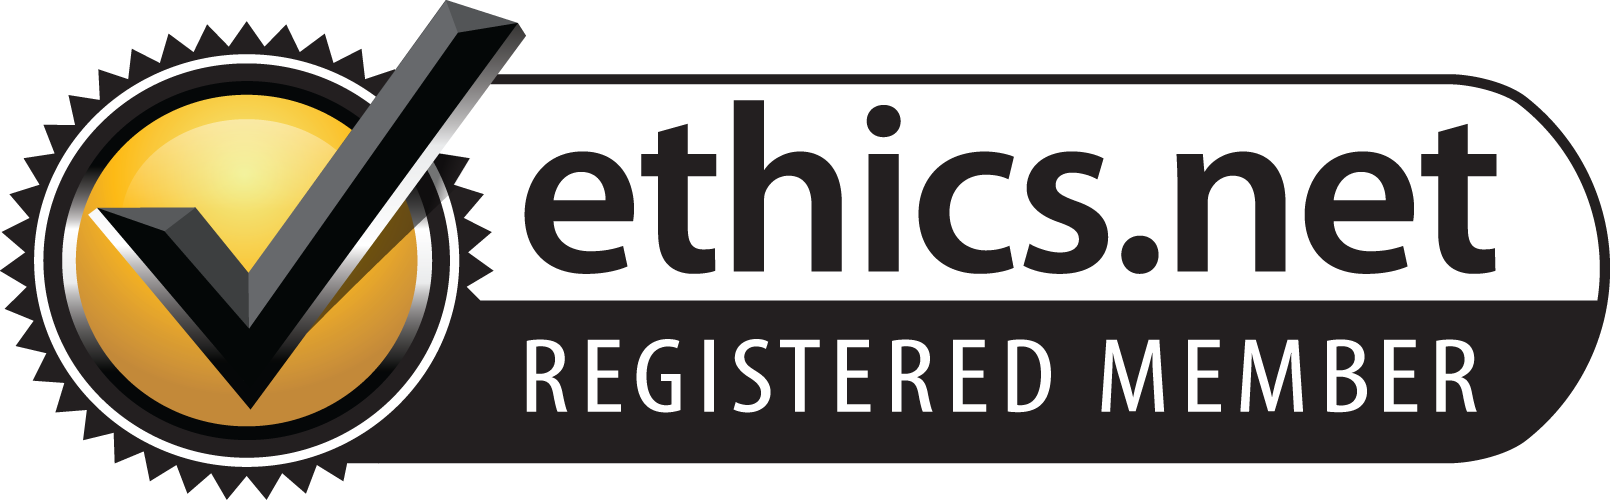 ethics.net Registered Member